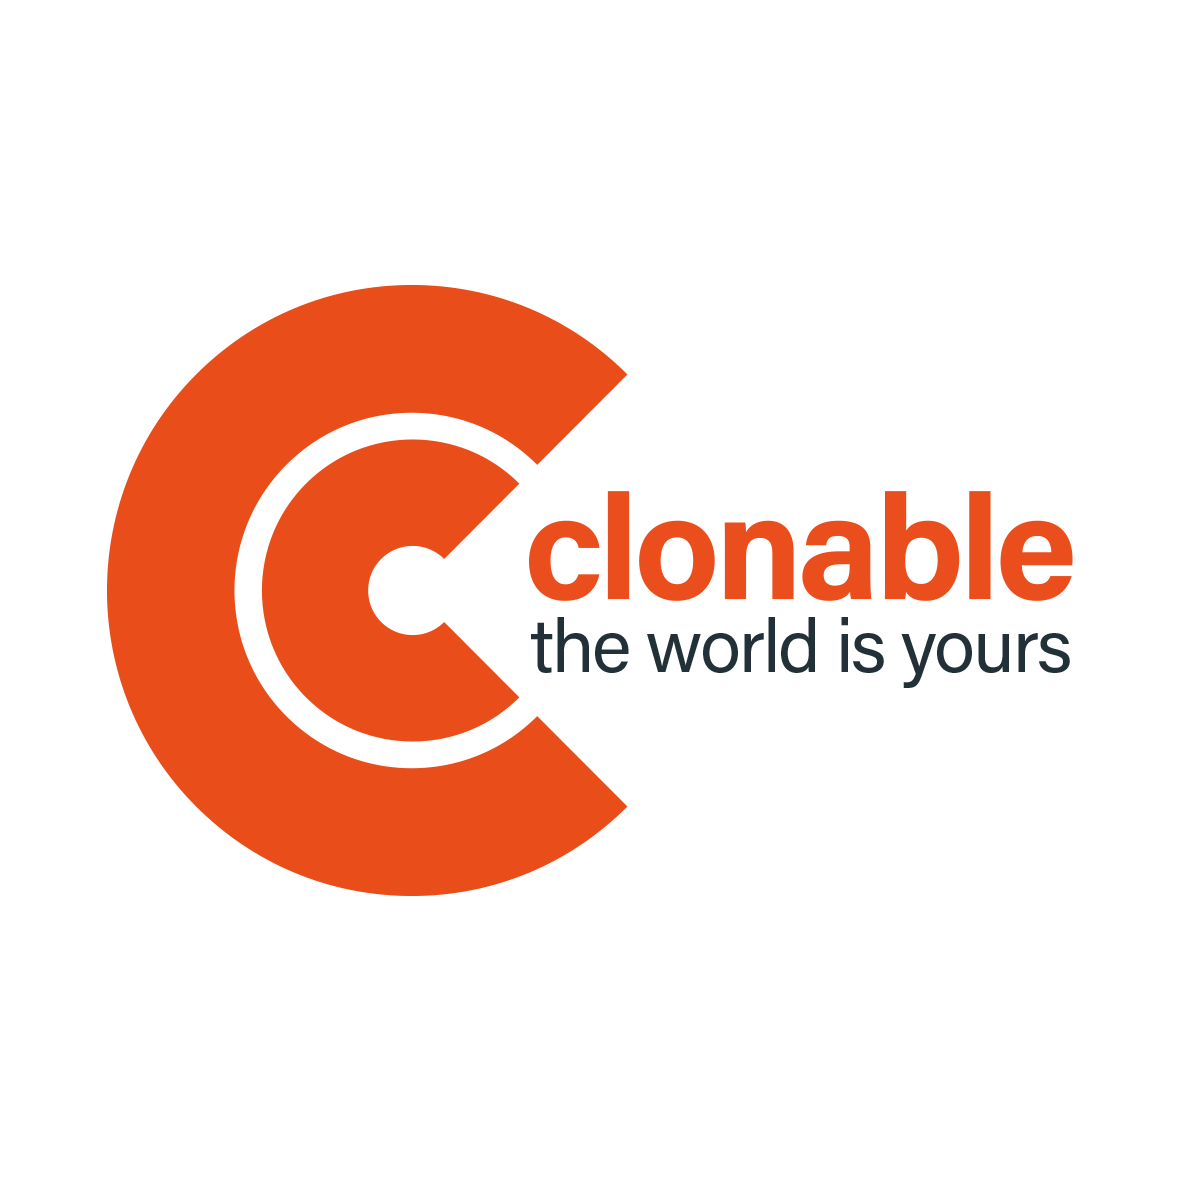 Clonable logo z hasłem na jasnym tle